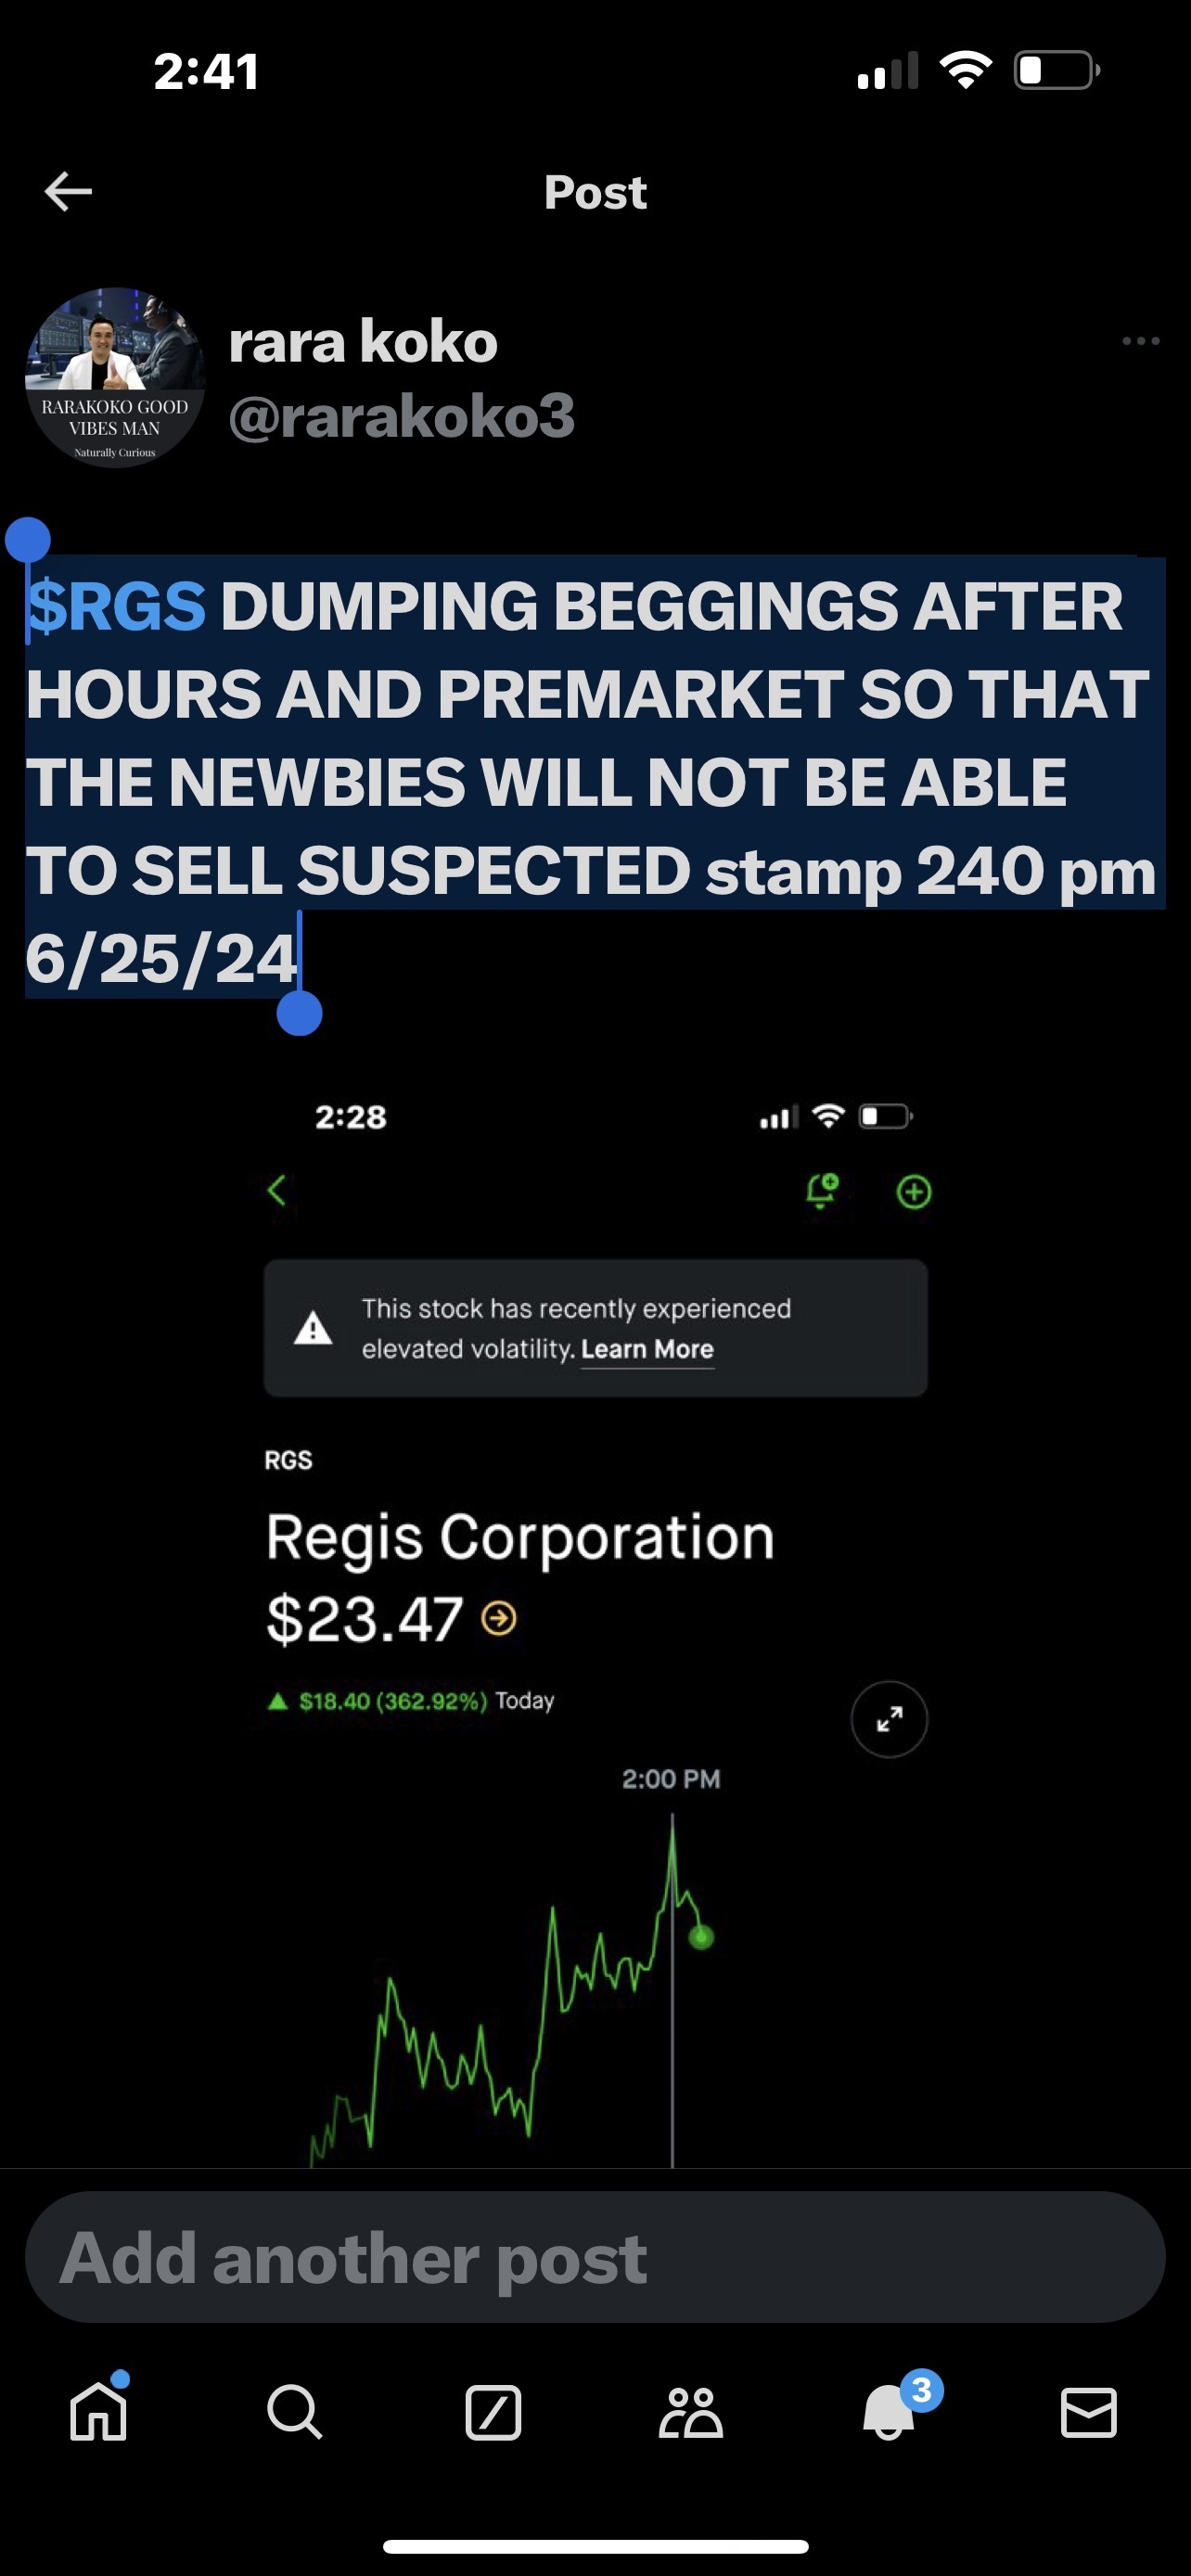 $RGS 在下班后和上市前倾销乞讨，这样新手就无法在 24 年 6 月 25 日下午 24:00 出售可疑邮票